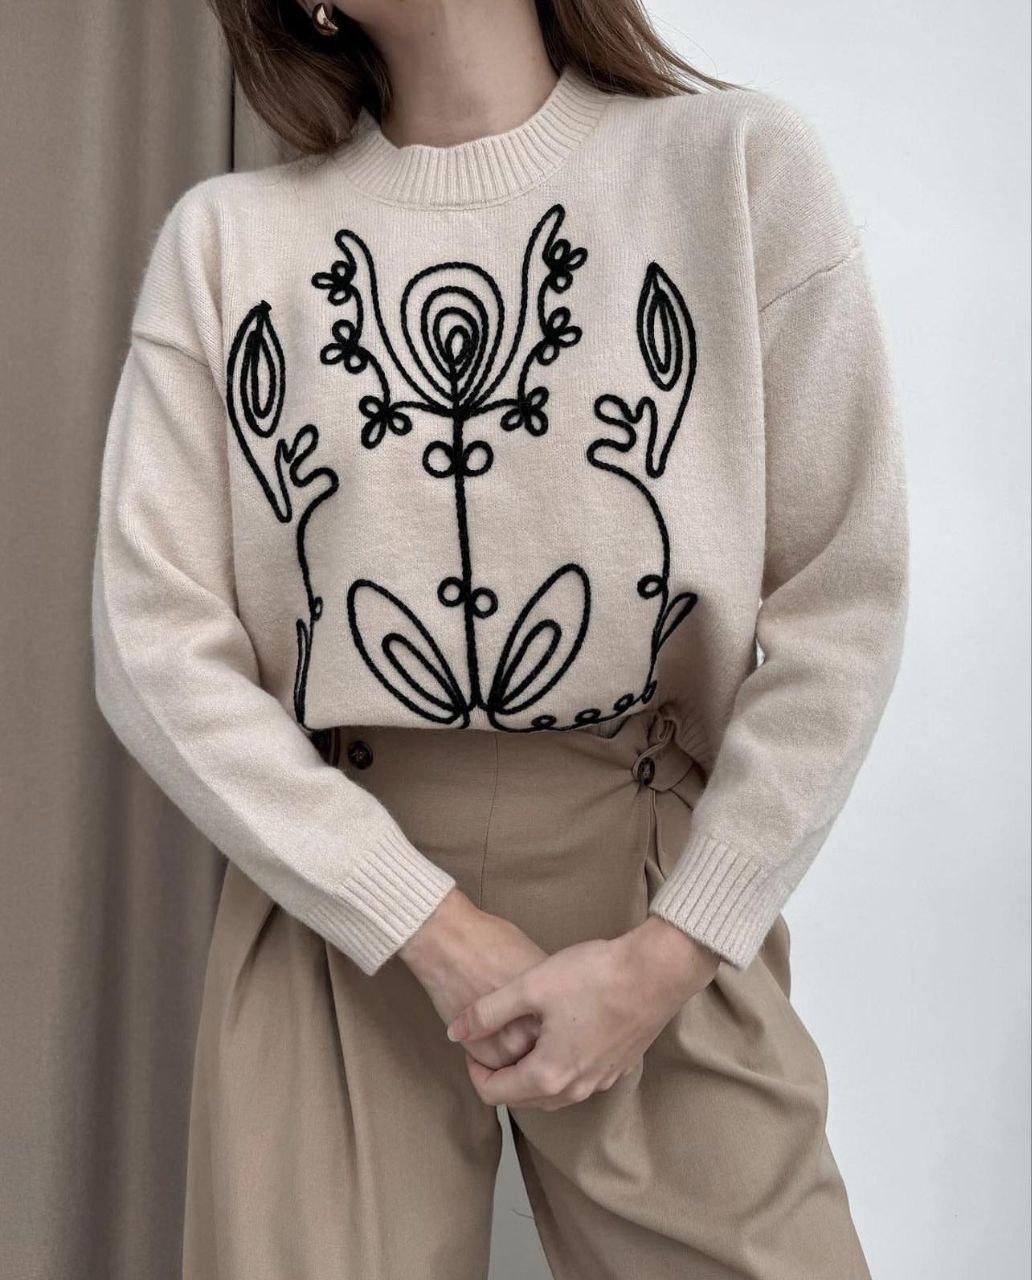 Жіночий повсякденний базовий універсальний осінній затишний м'який светр із принтом, у кольорах